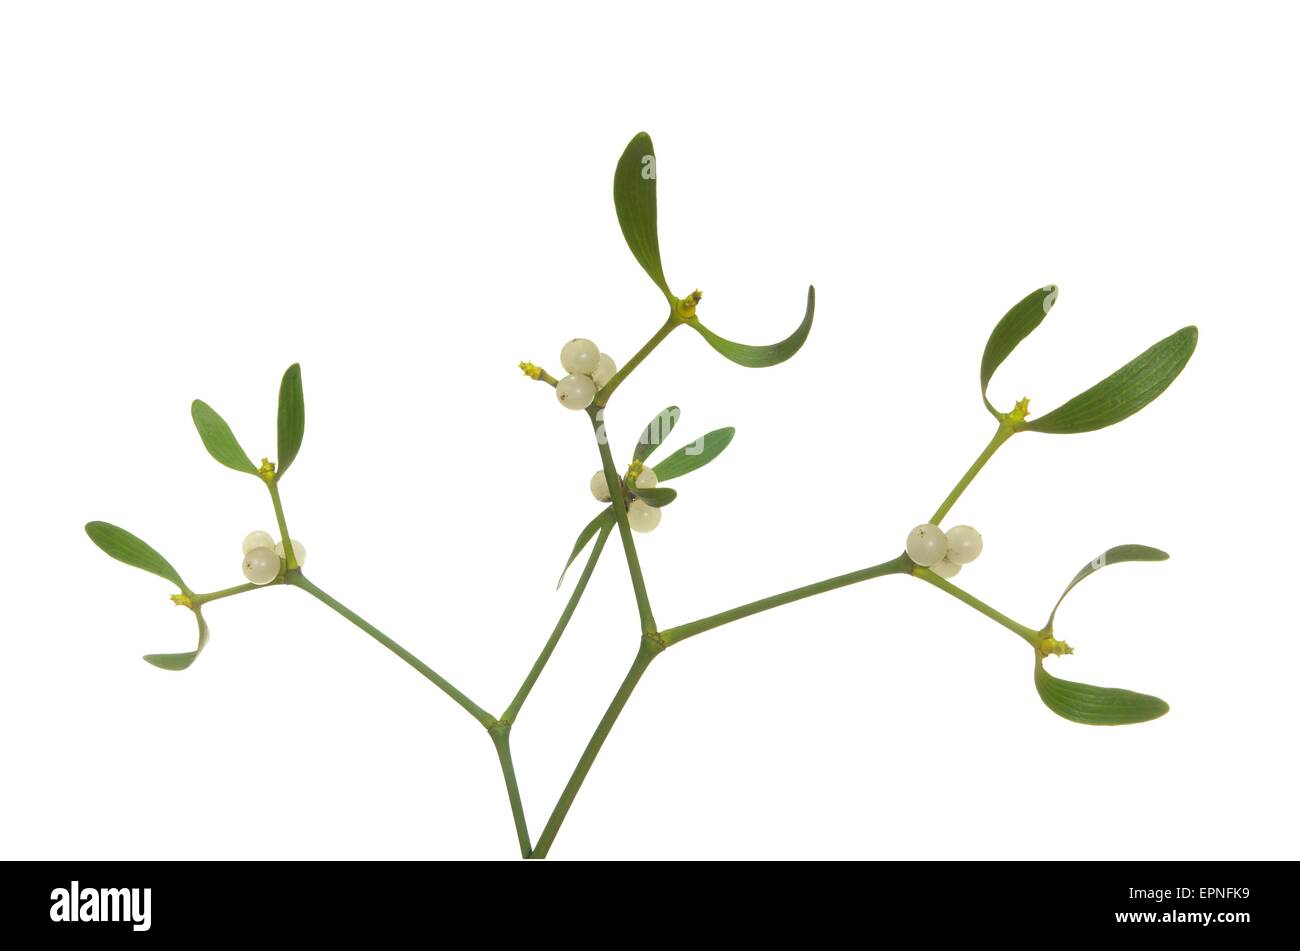 photo of mistletoe on white background Stock Photo